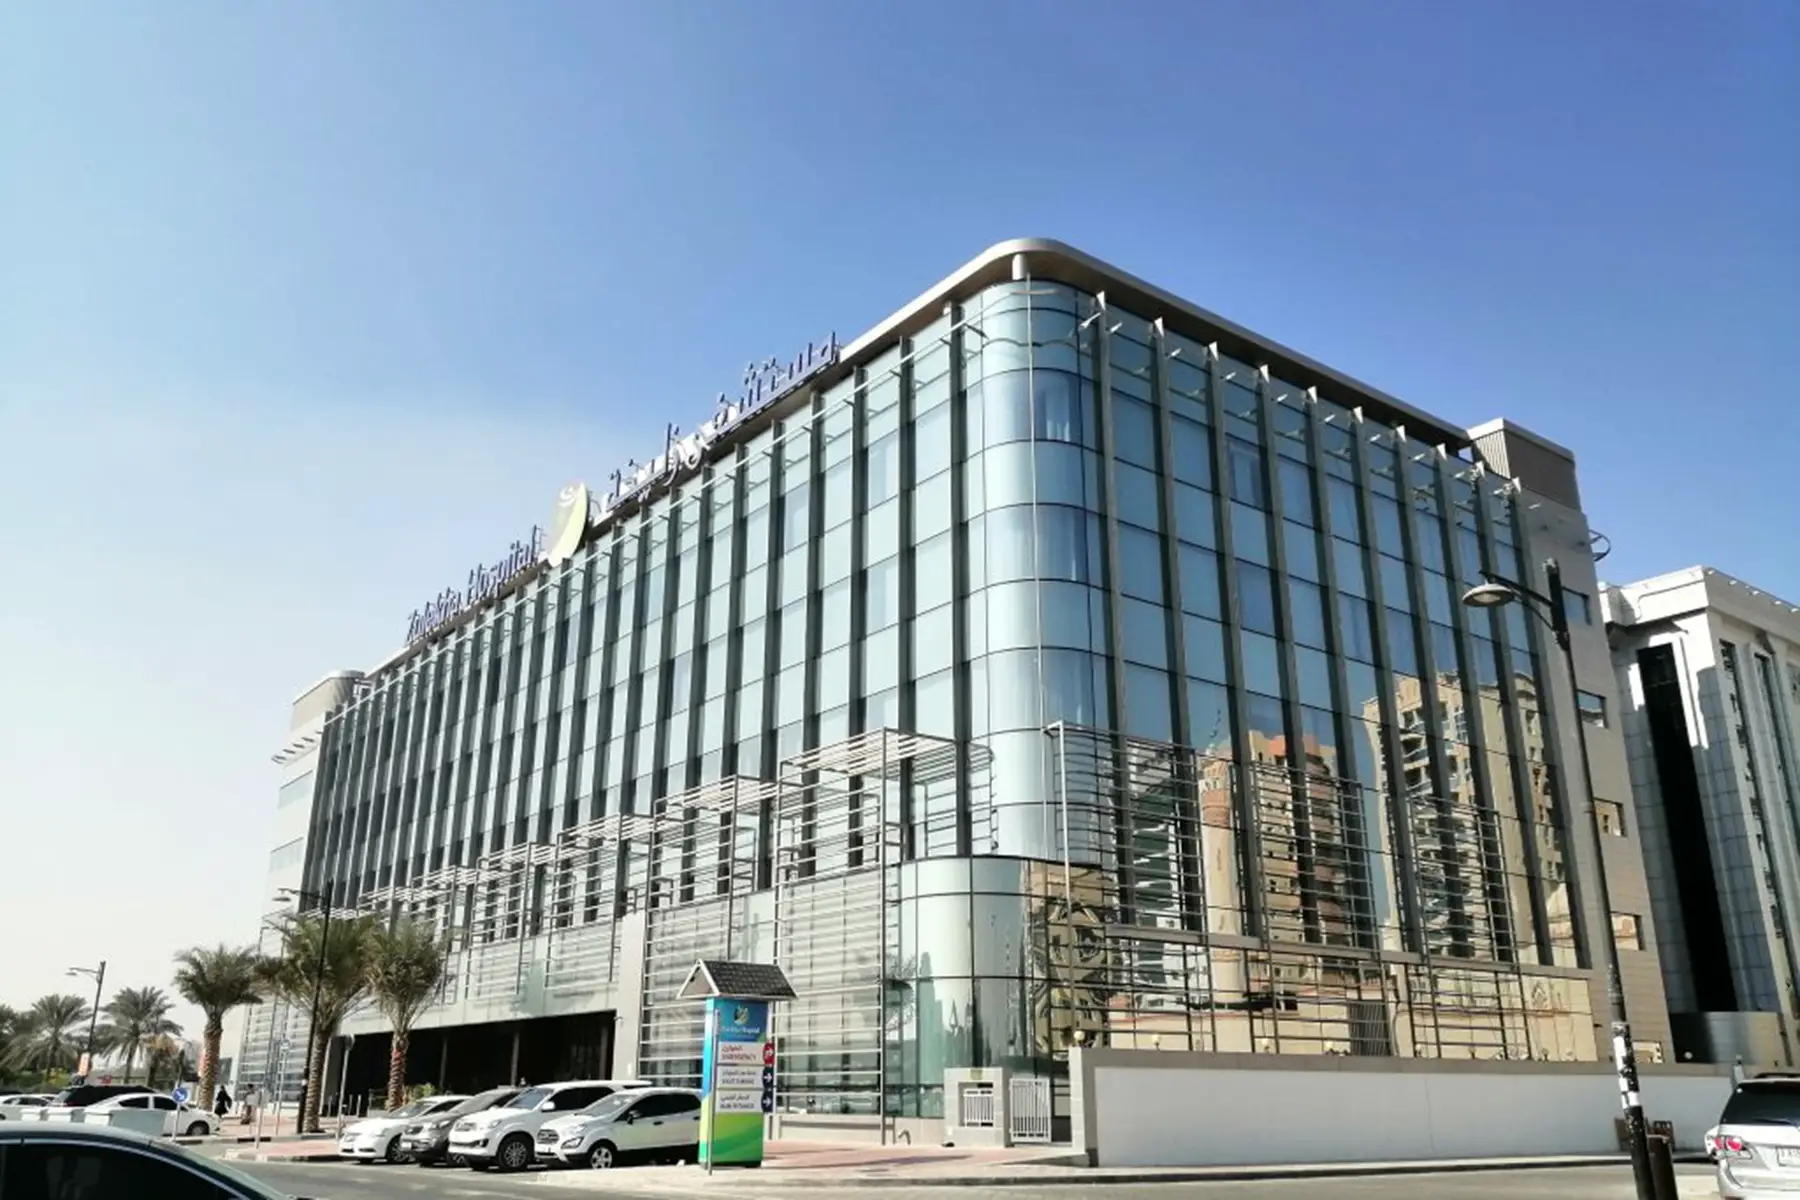 Zulekha Hospital in Dubai